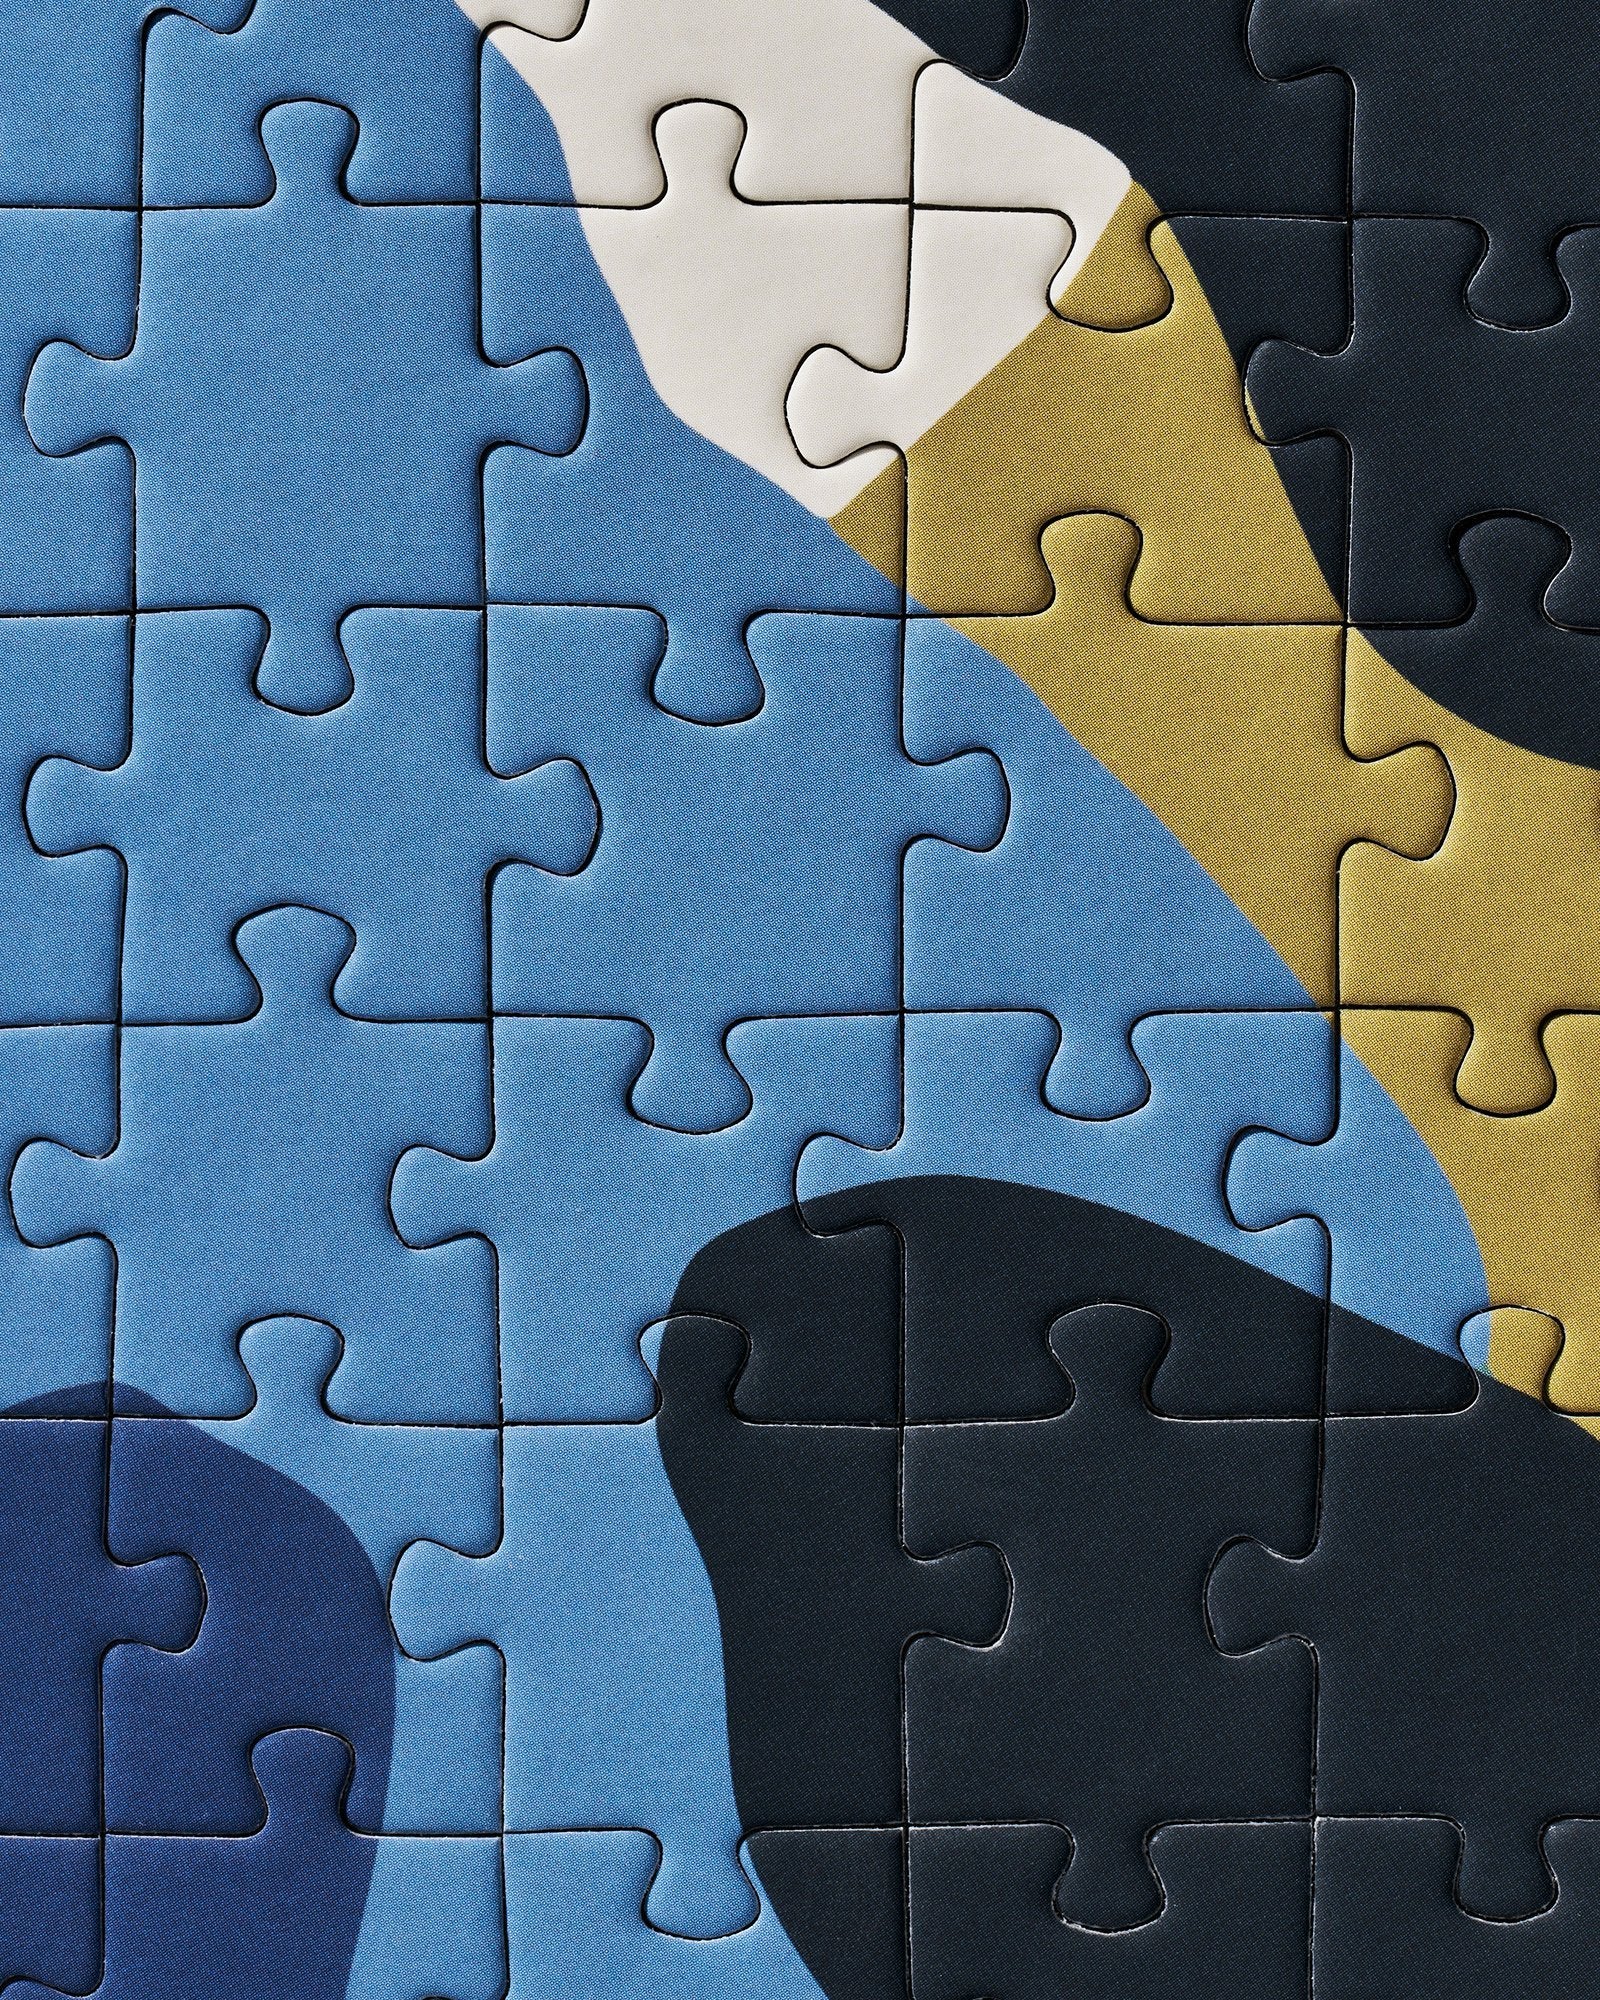 Migula Puzzle by Marleigh Culver - Ordinary Habit